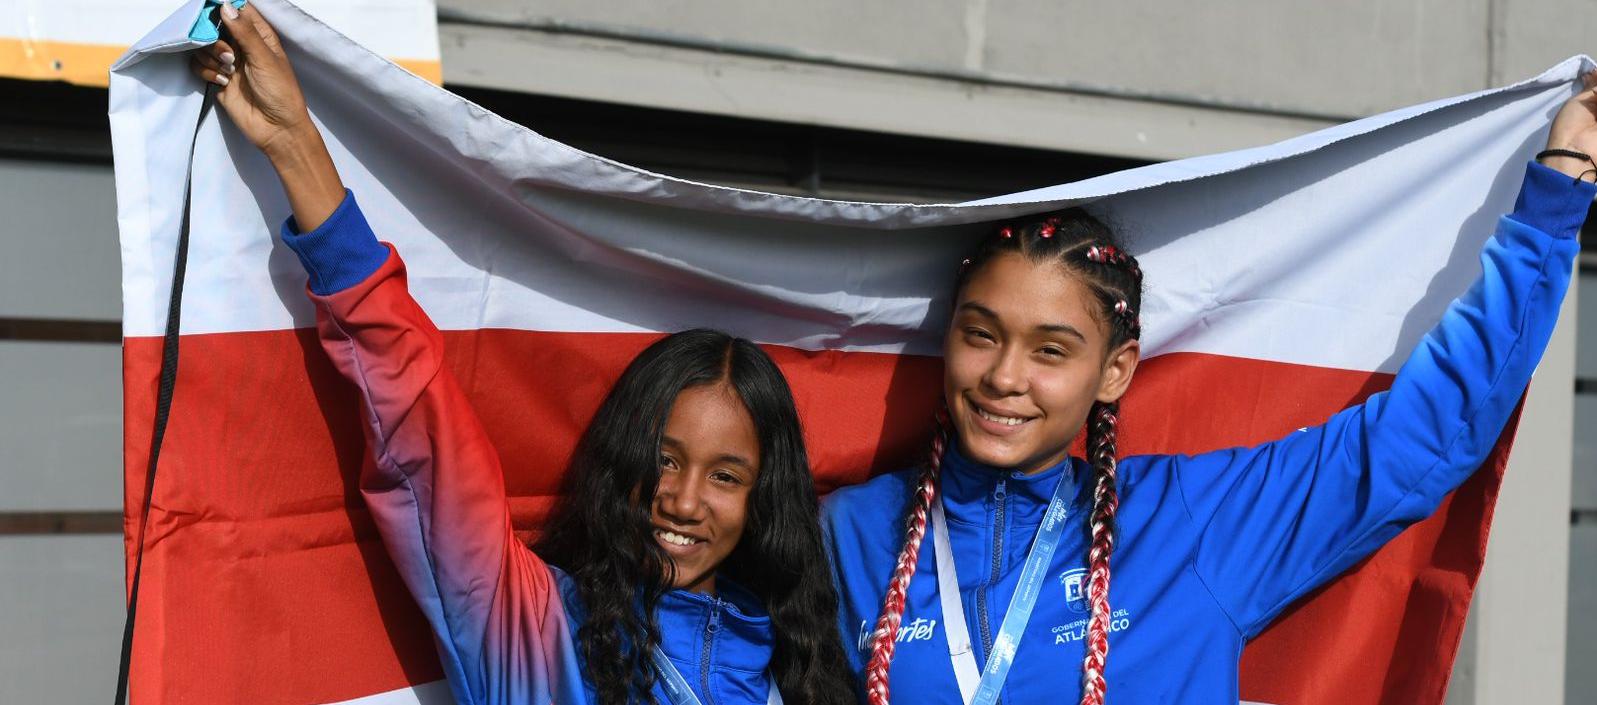 Laura Alcalá y Samantha Peñuela, oro y bronce en atletismo.